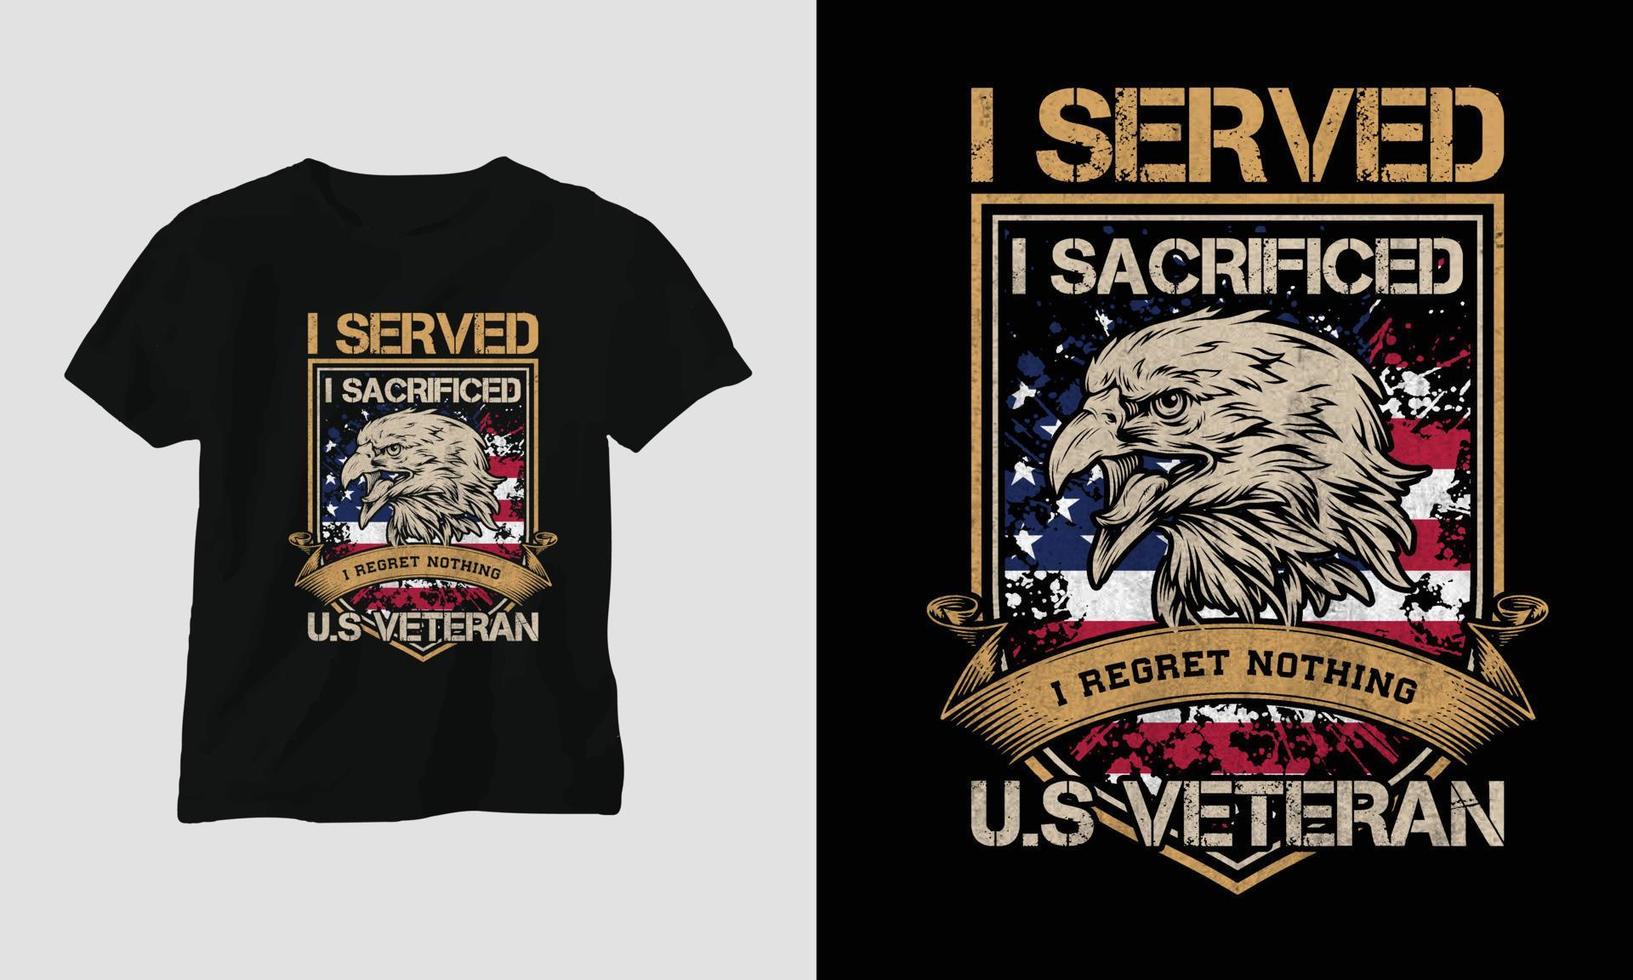 veteranen dag t-shirt ontwerp sjabloon vector